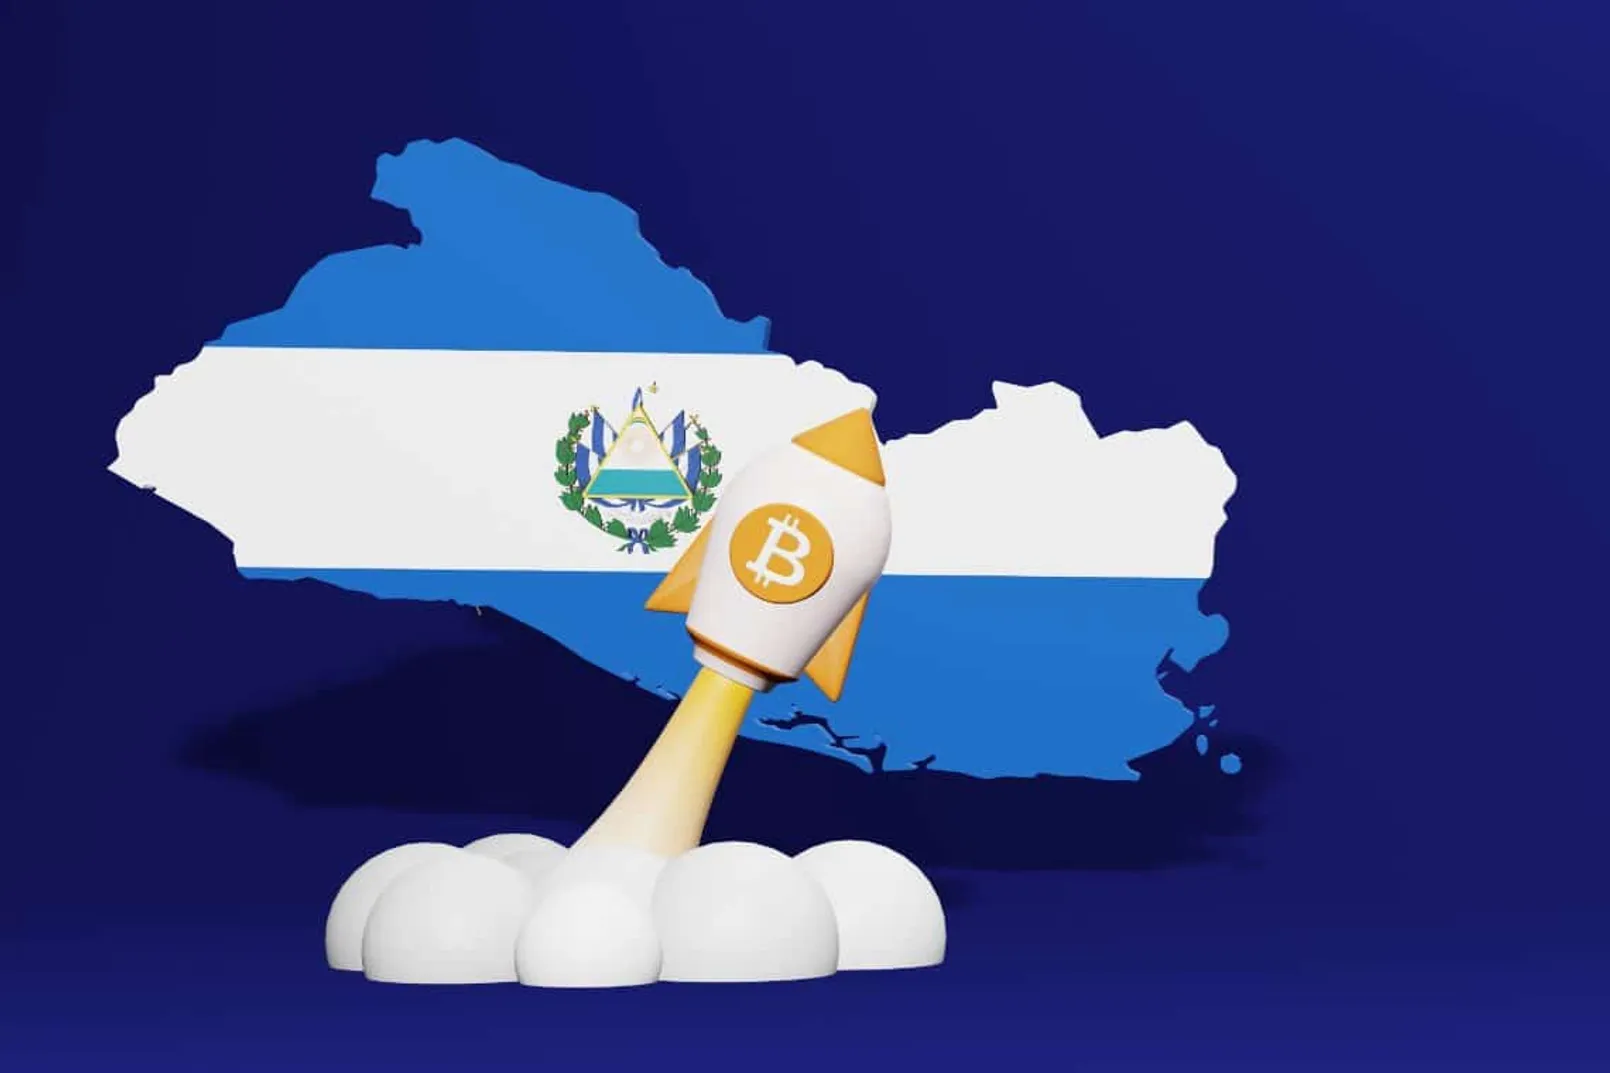 El Salvador Bitcoin2 1.jpg